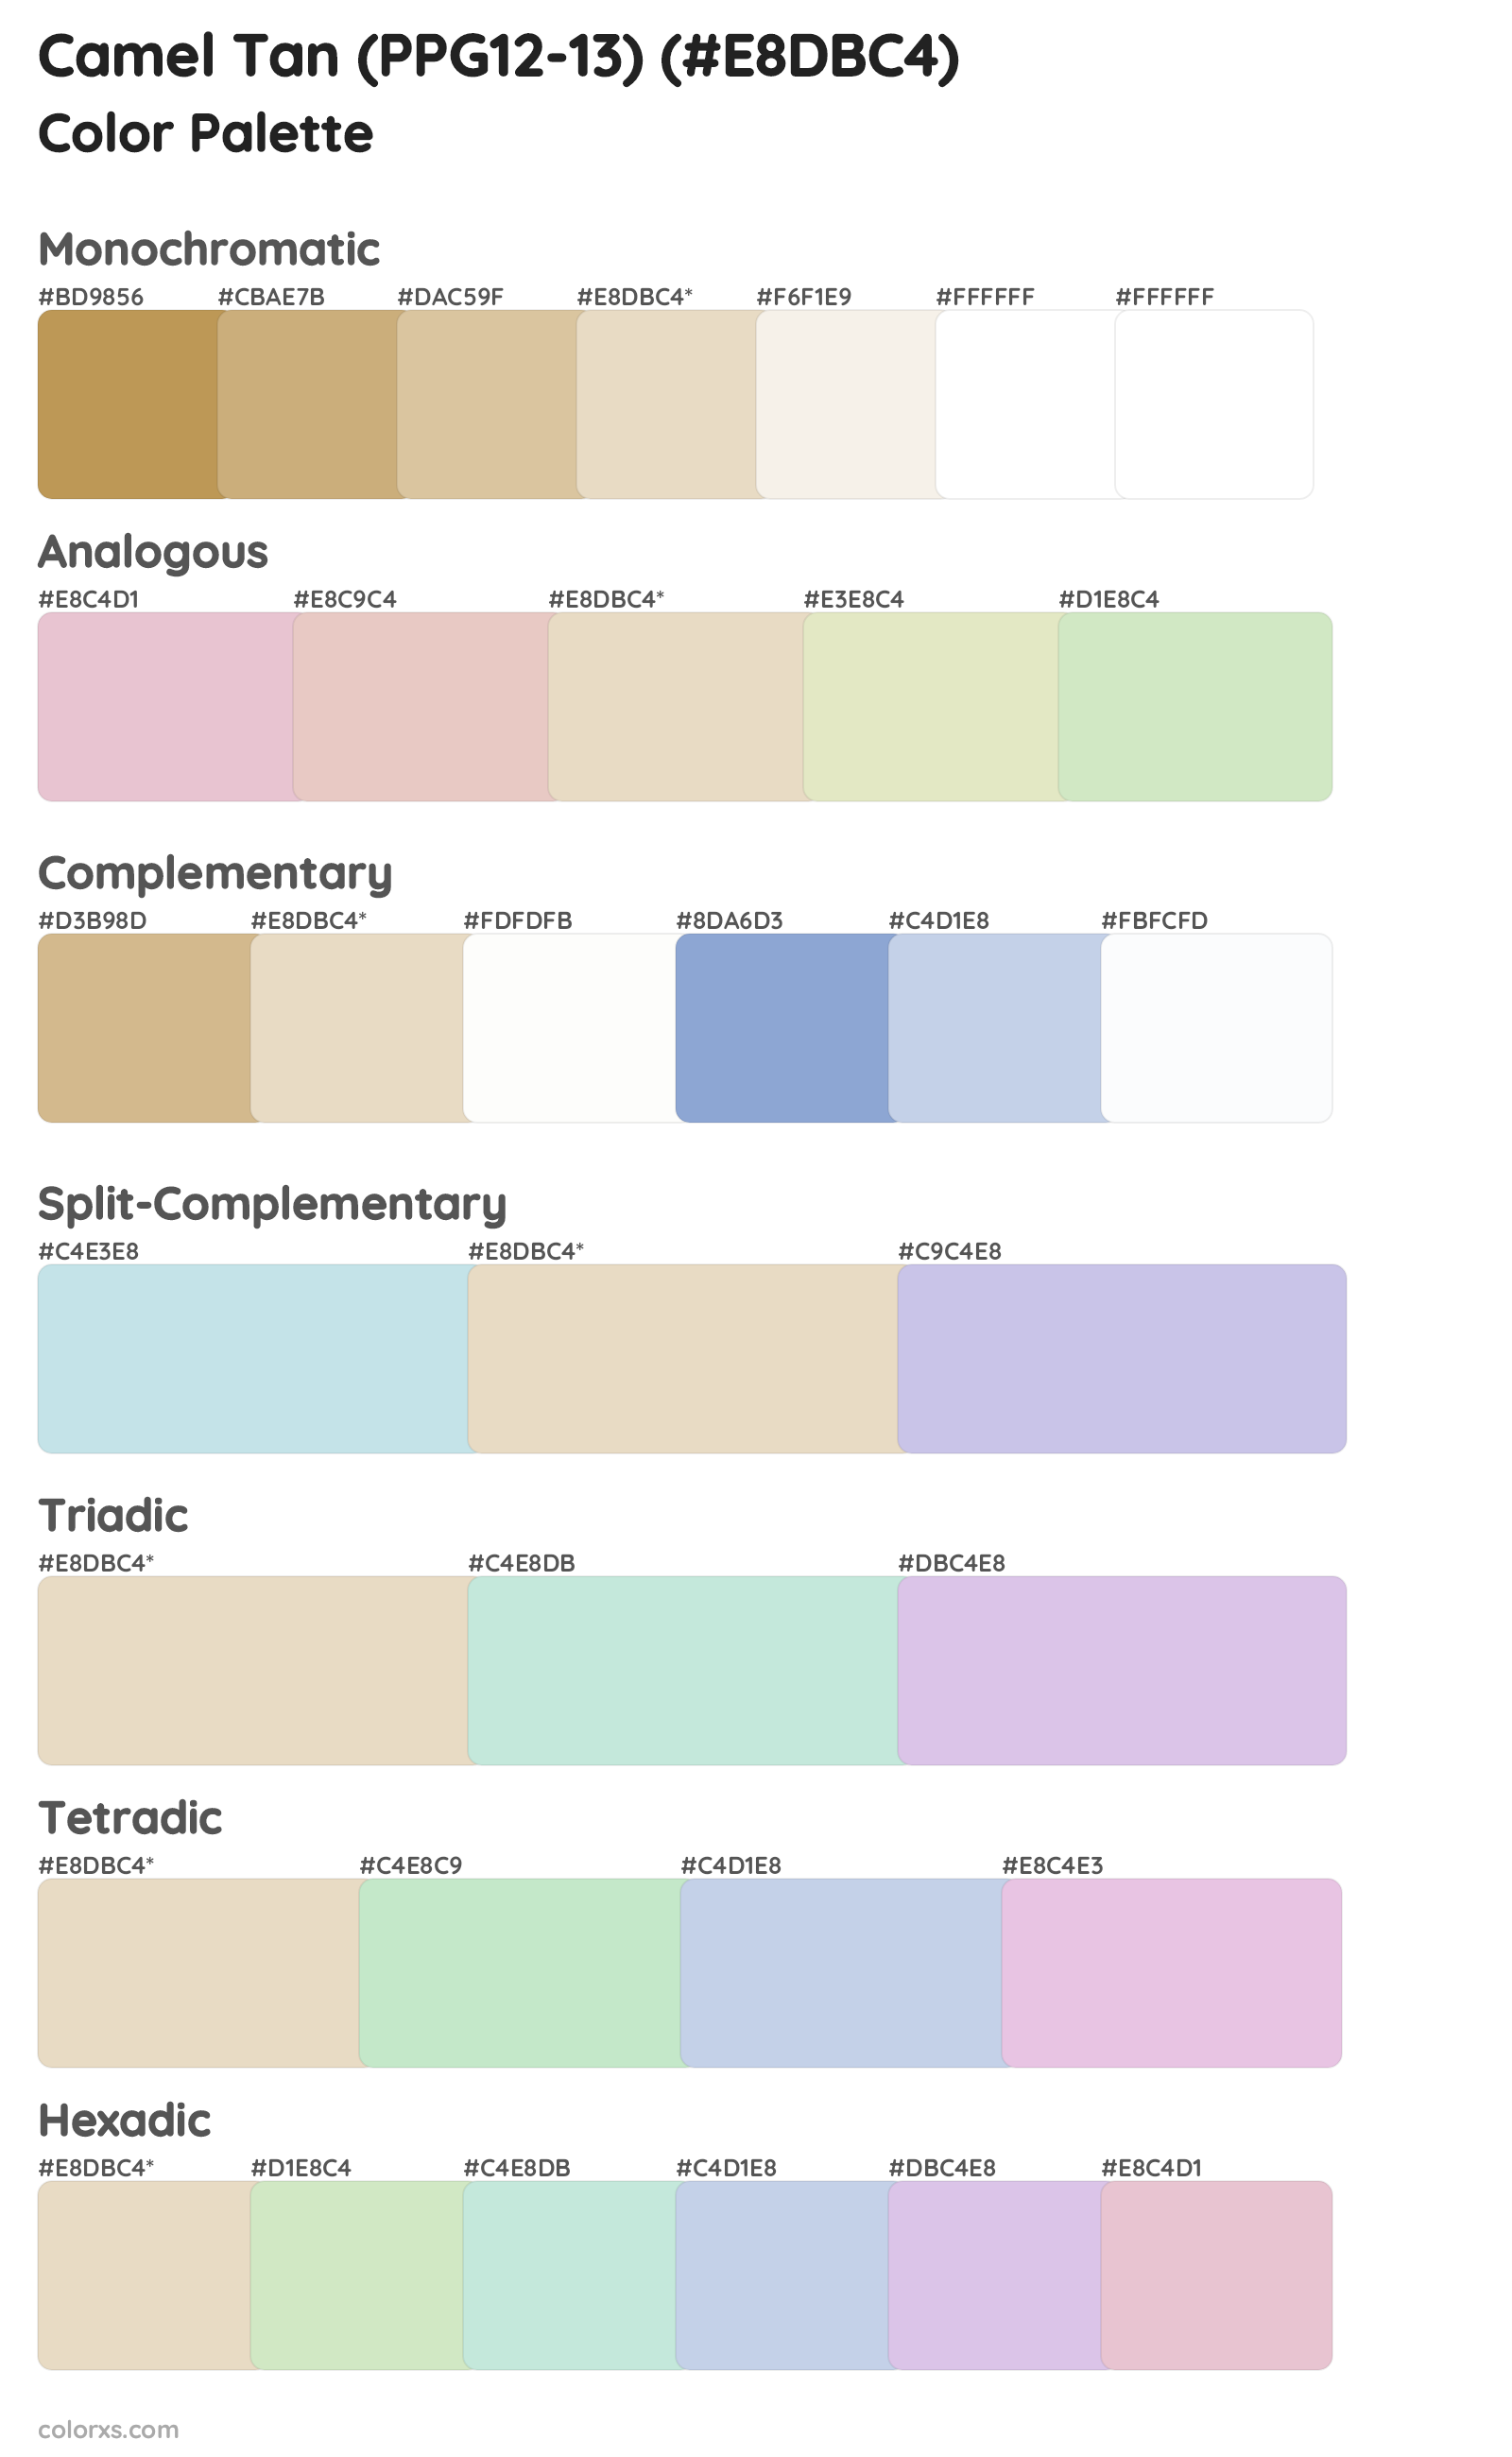 Camel Tan (PPG12-13) Color Scheme Palettes